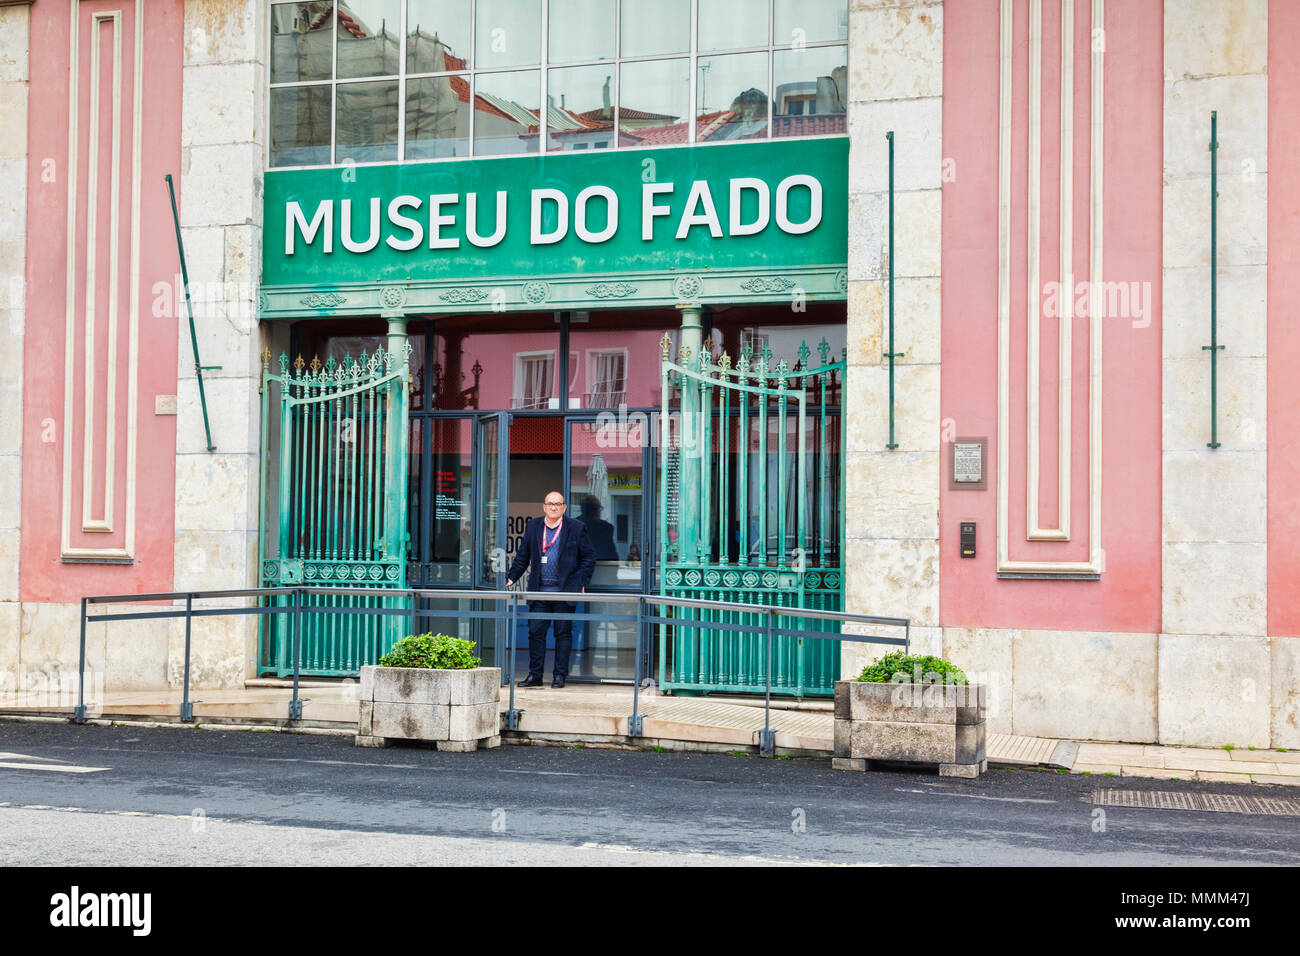 27 Février 2018 : Lisbonne, Portugal - Museu do Fado, ou musée du Fado, dans le quartier d'Alfama. Banque D'Images